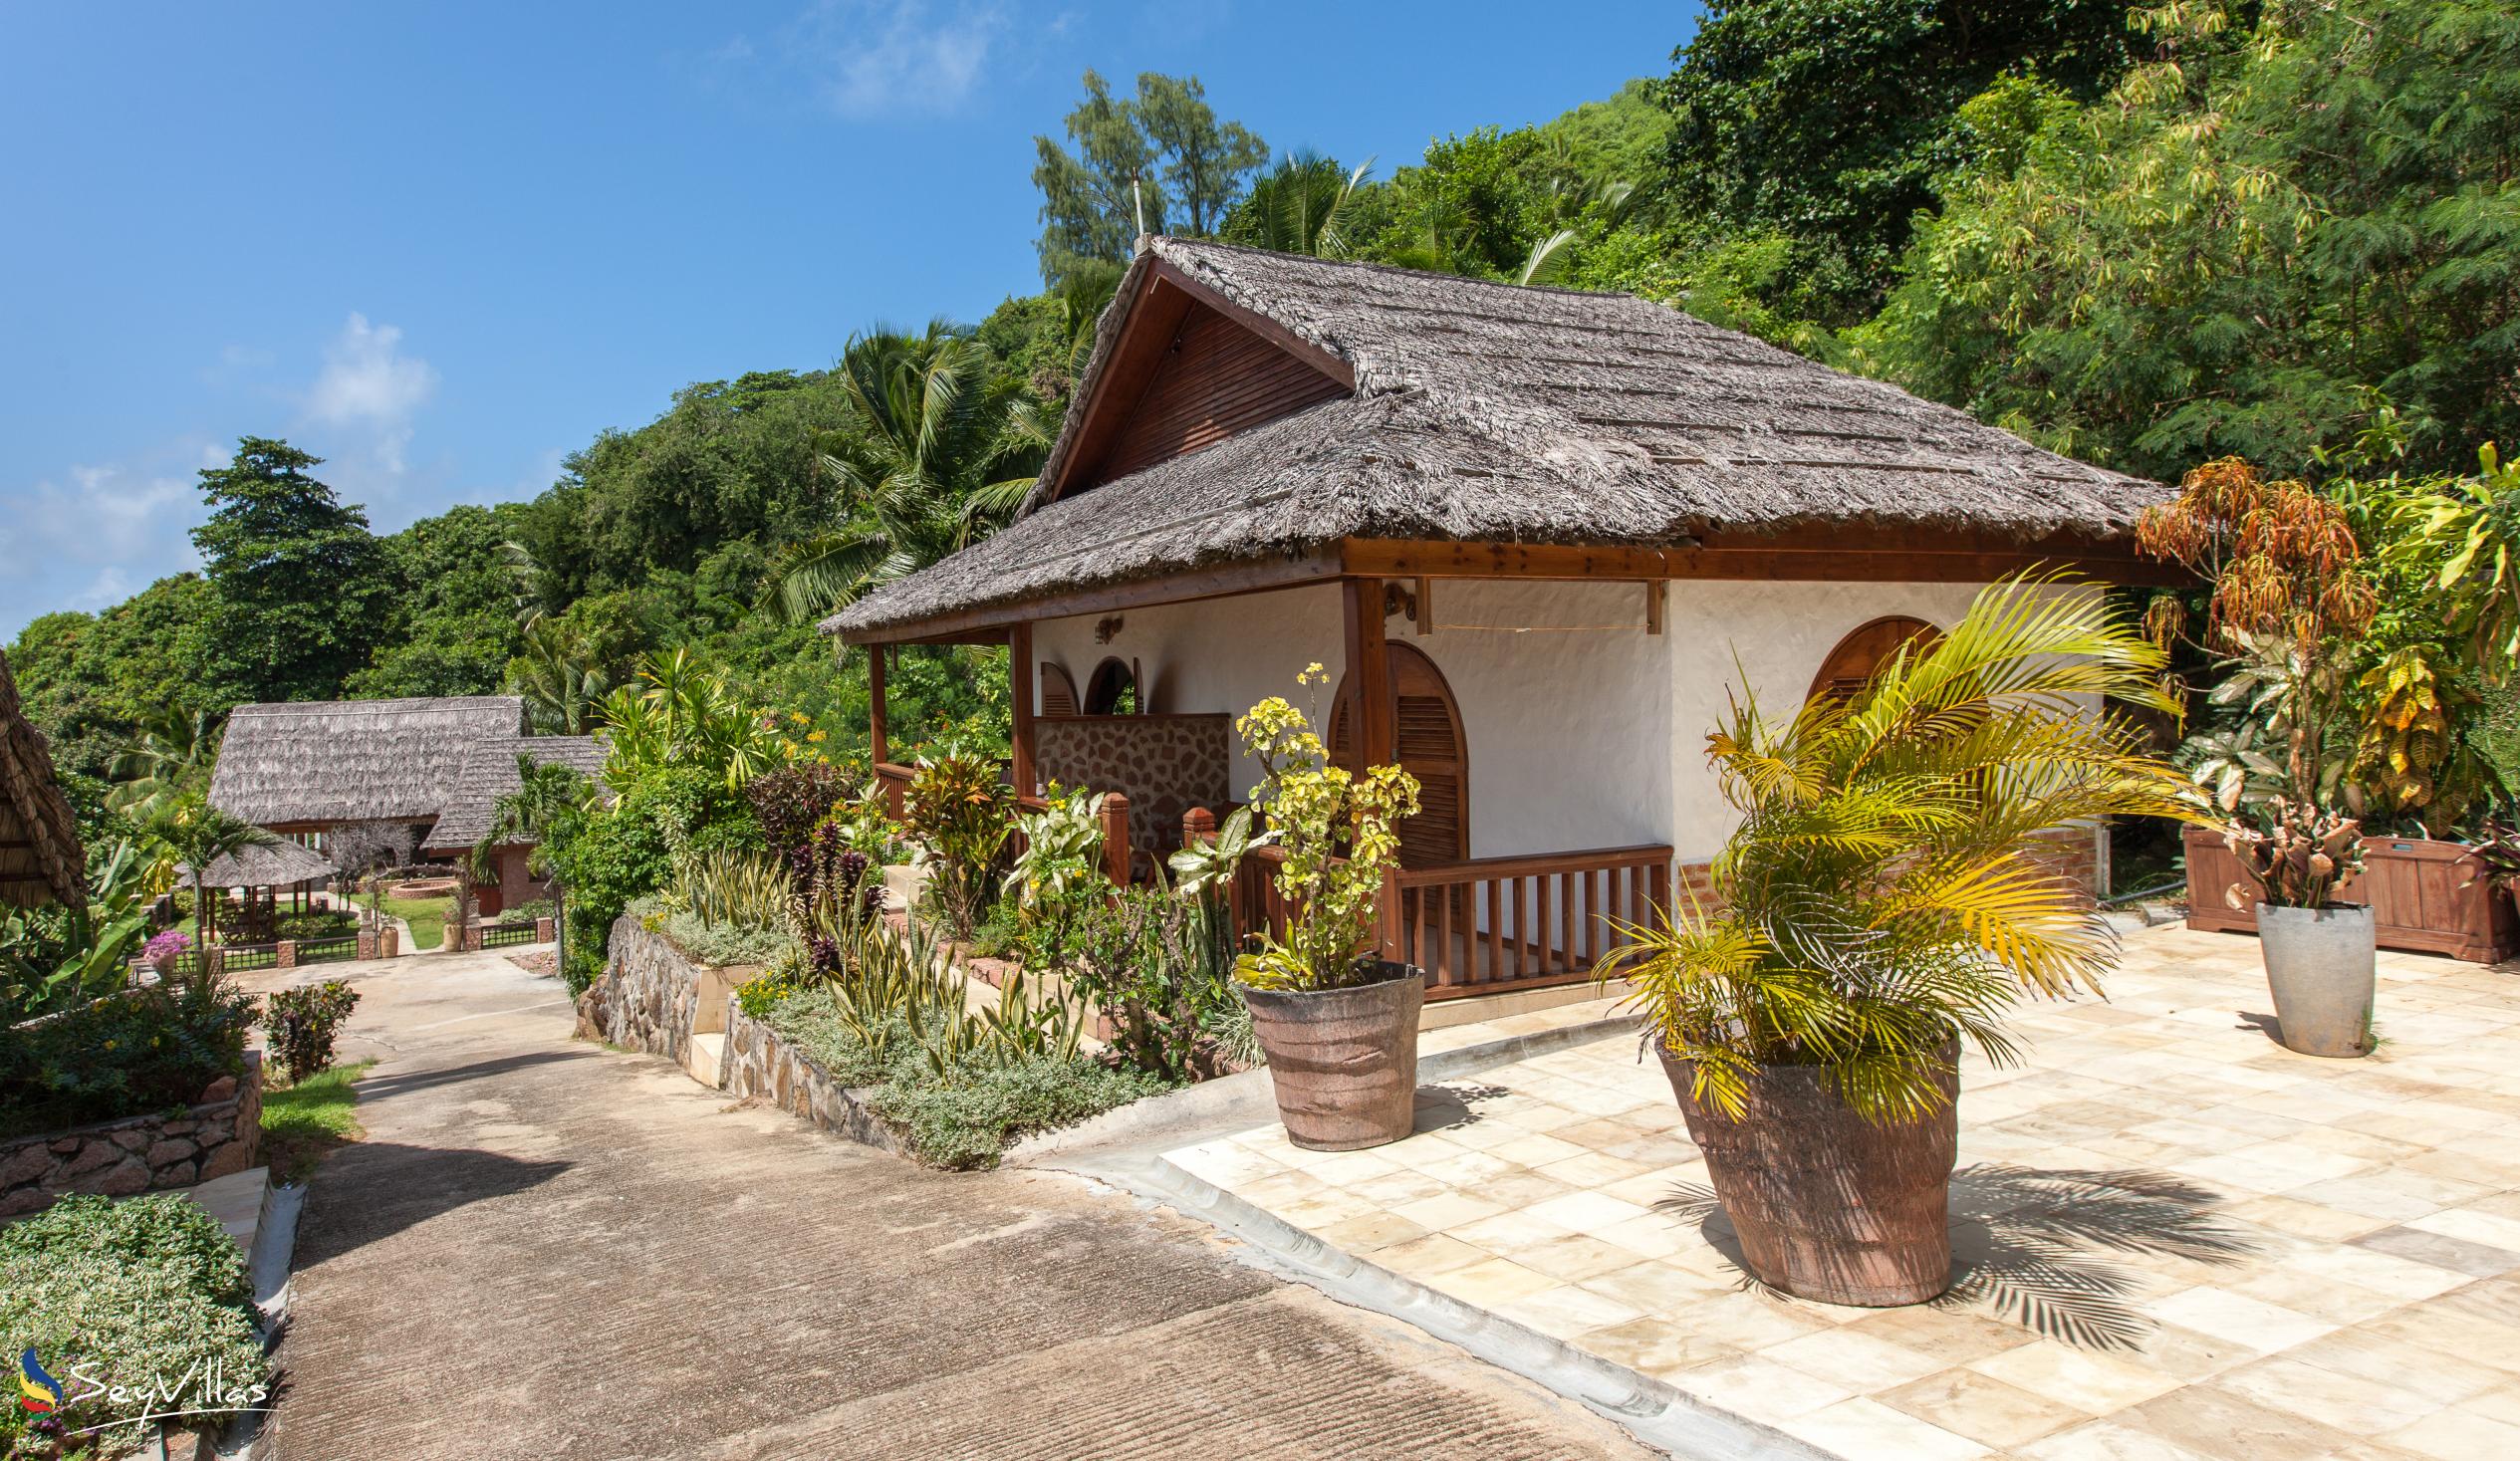 Foto 21: Colibri Guesthouse - Aussenbereich - Praslin (Seychellen)